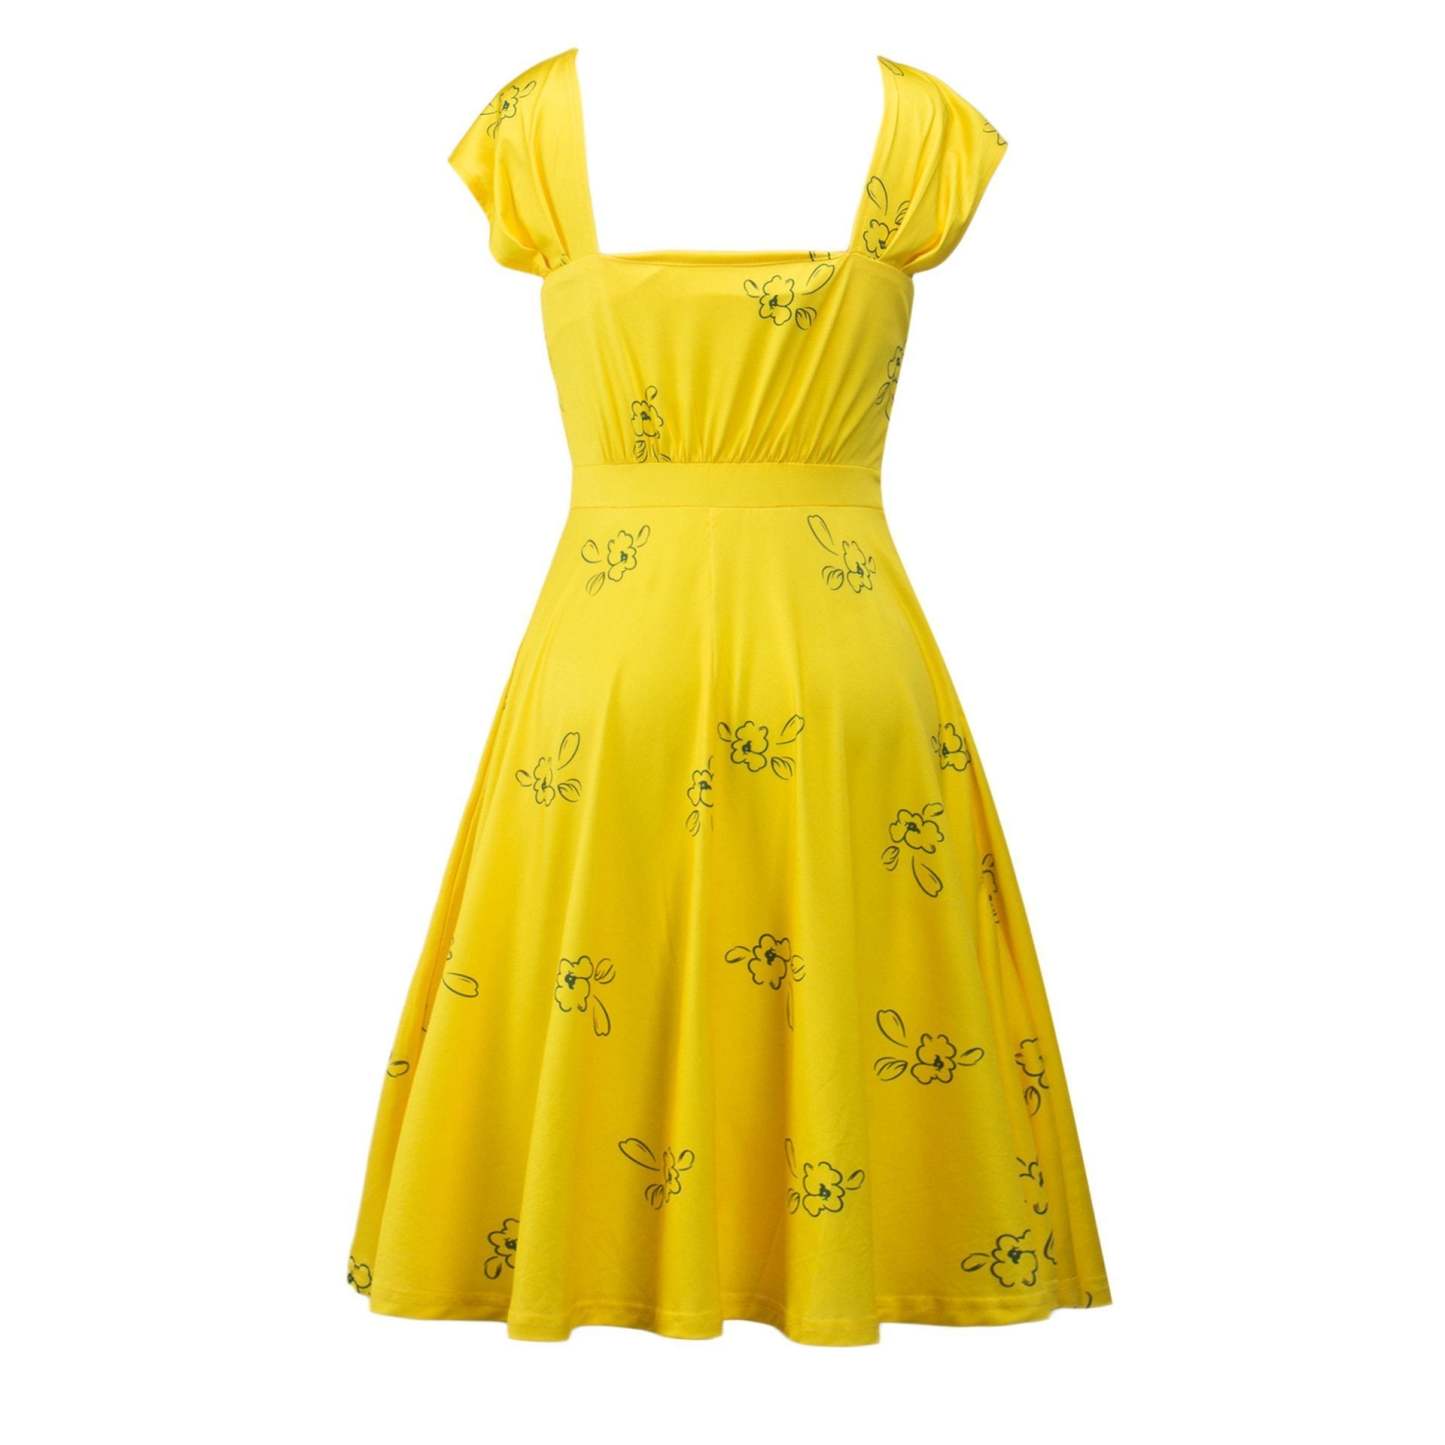 La La Land Emma Stone Actress Yellow Dress Movie Cosplay Costume